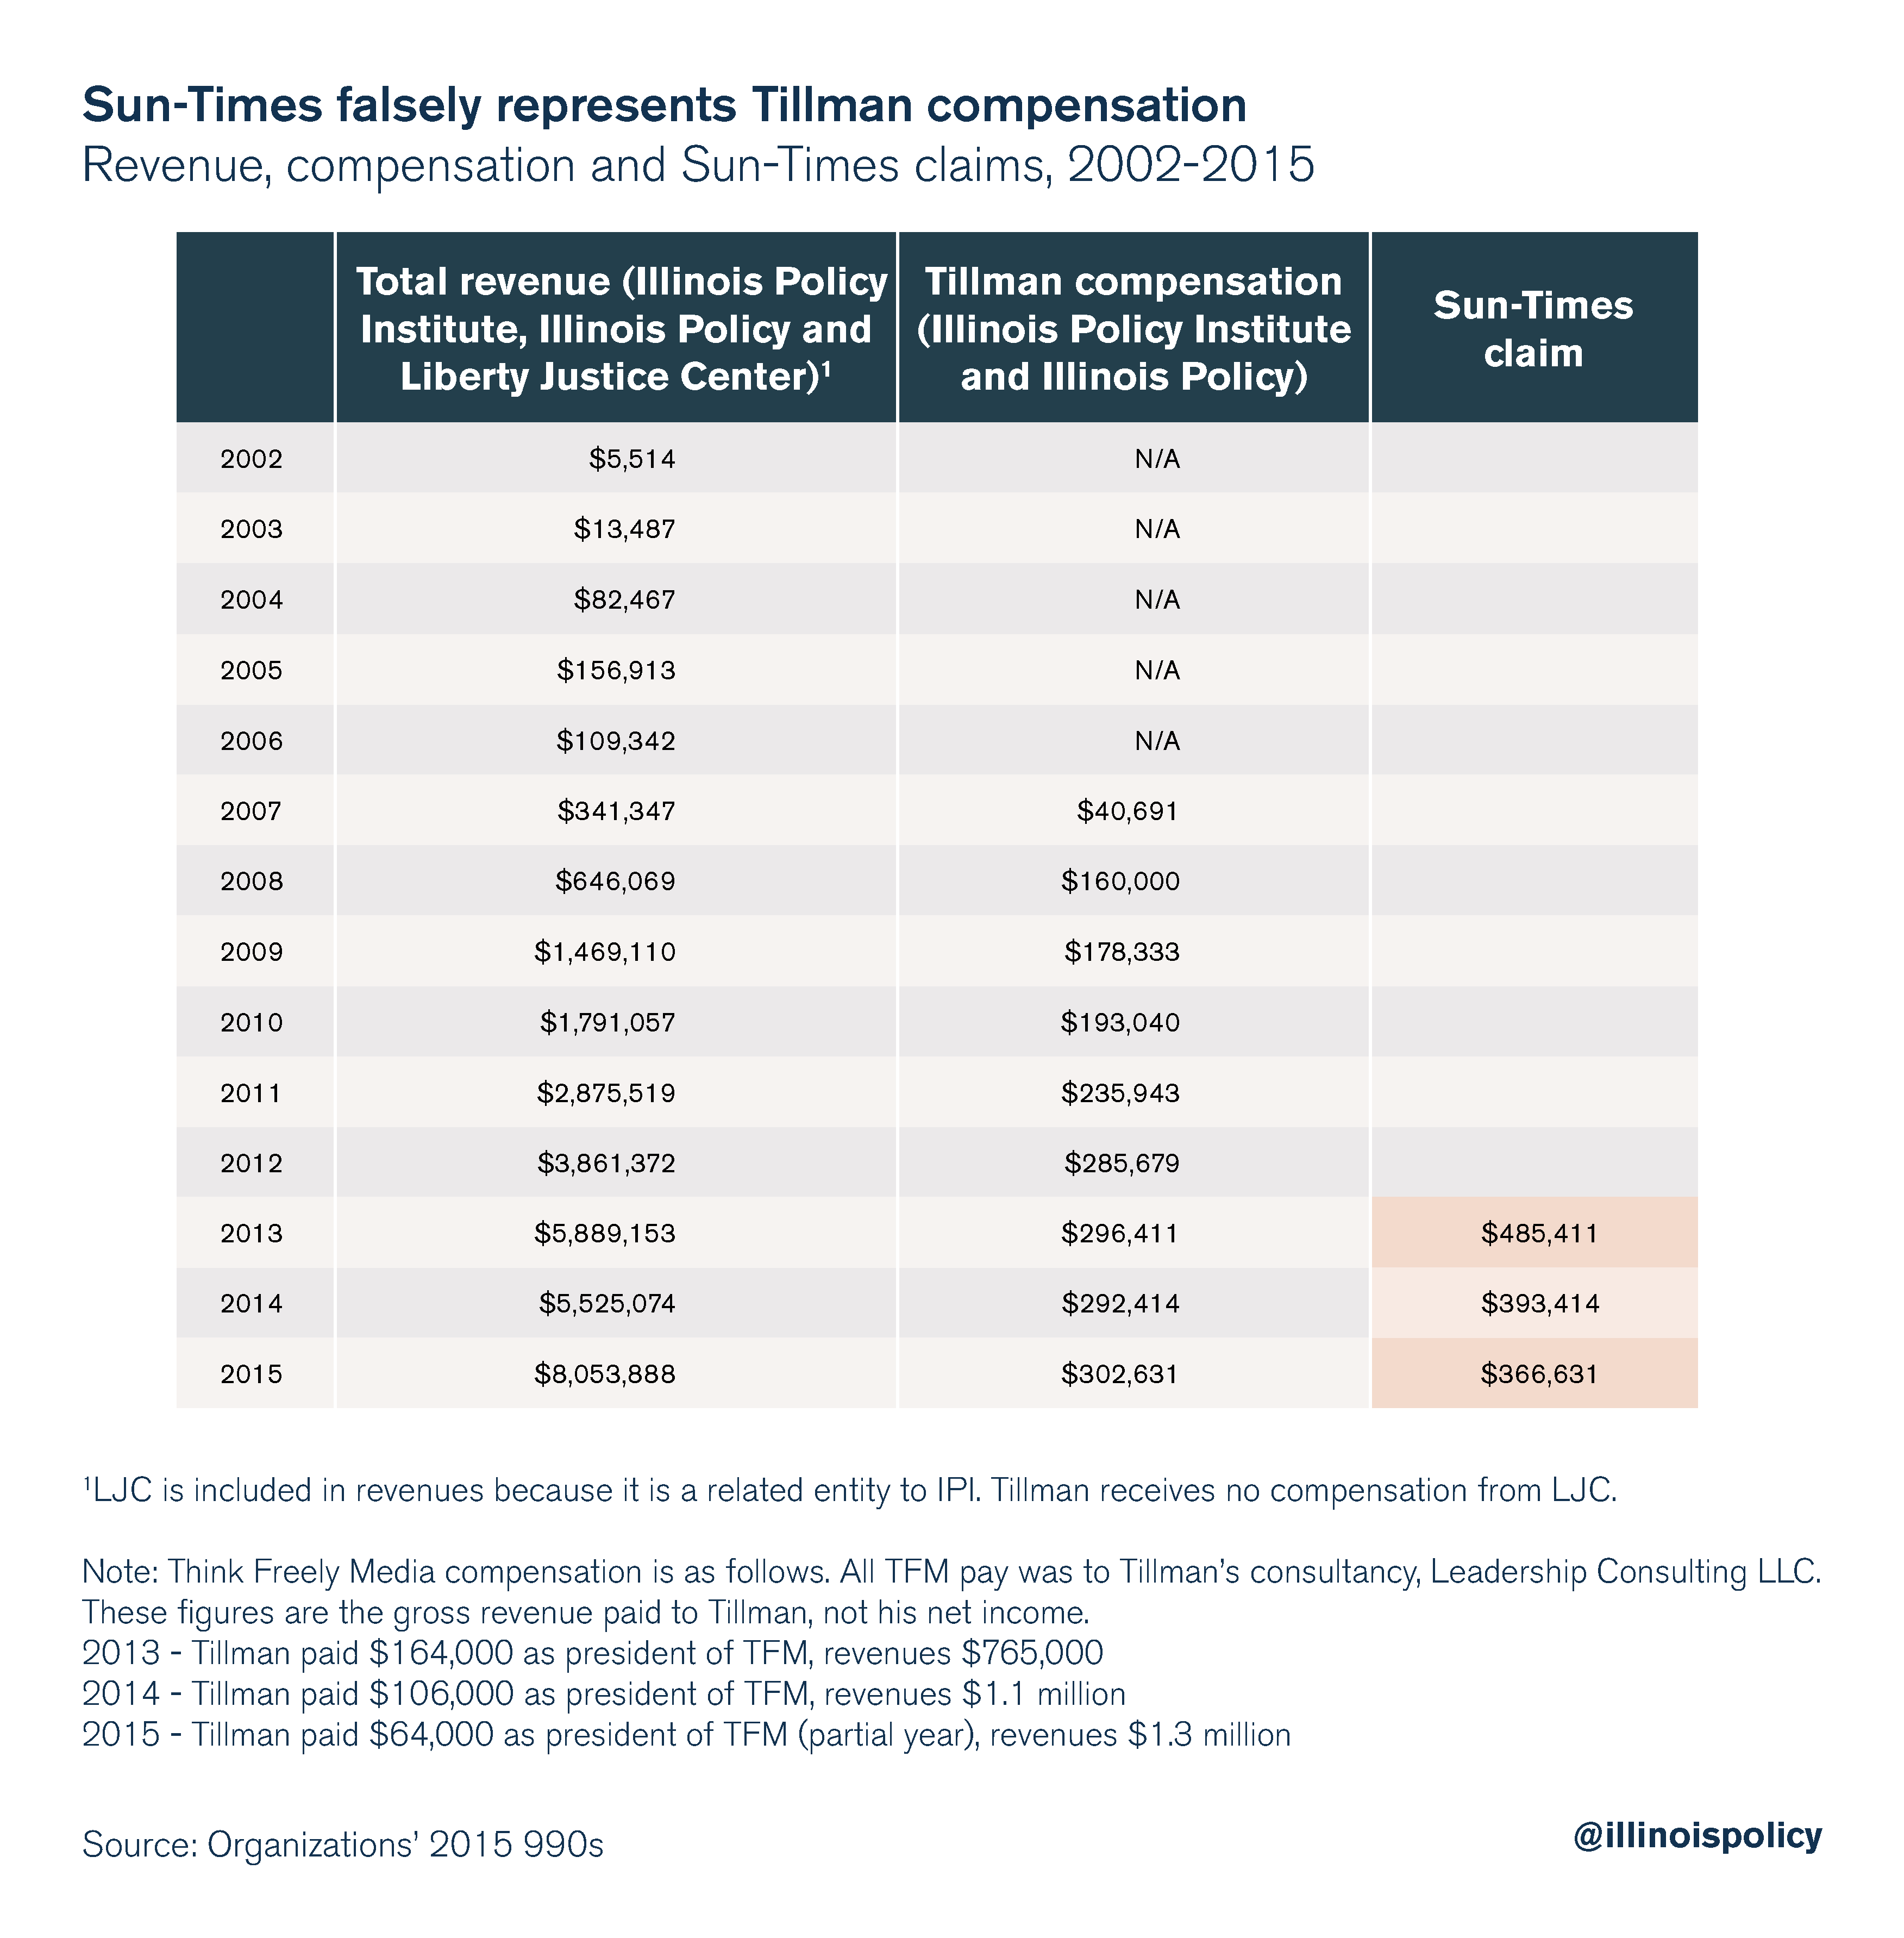 Sun-Times falsely represents Tillman's compensation